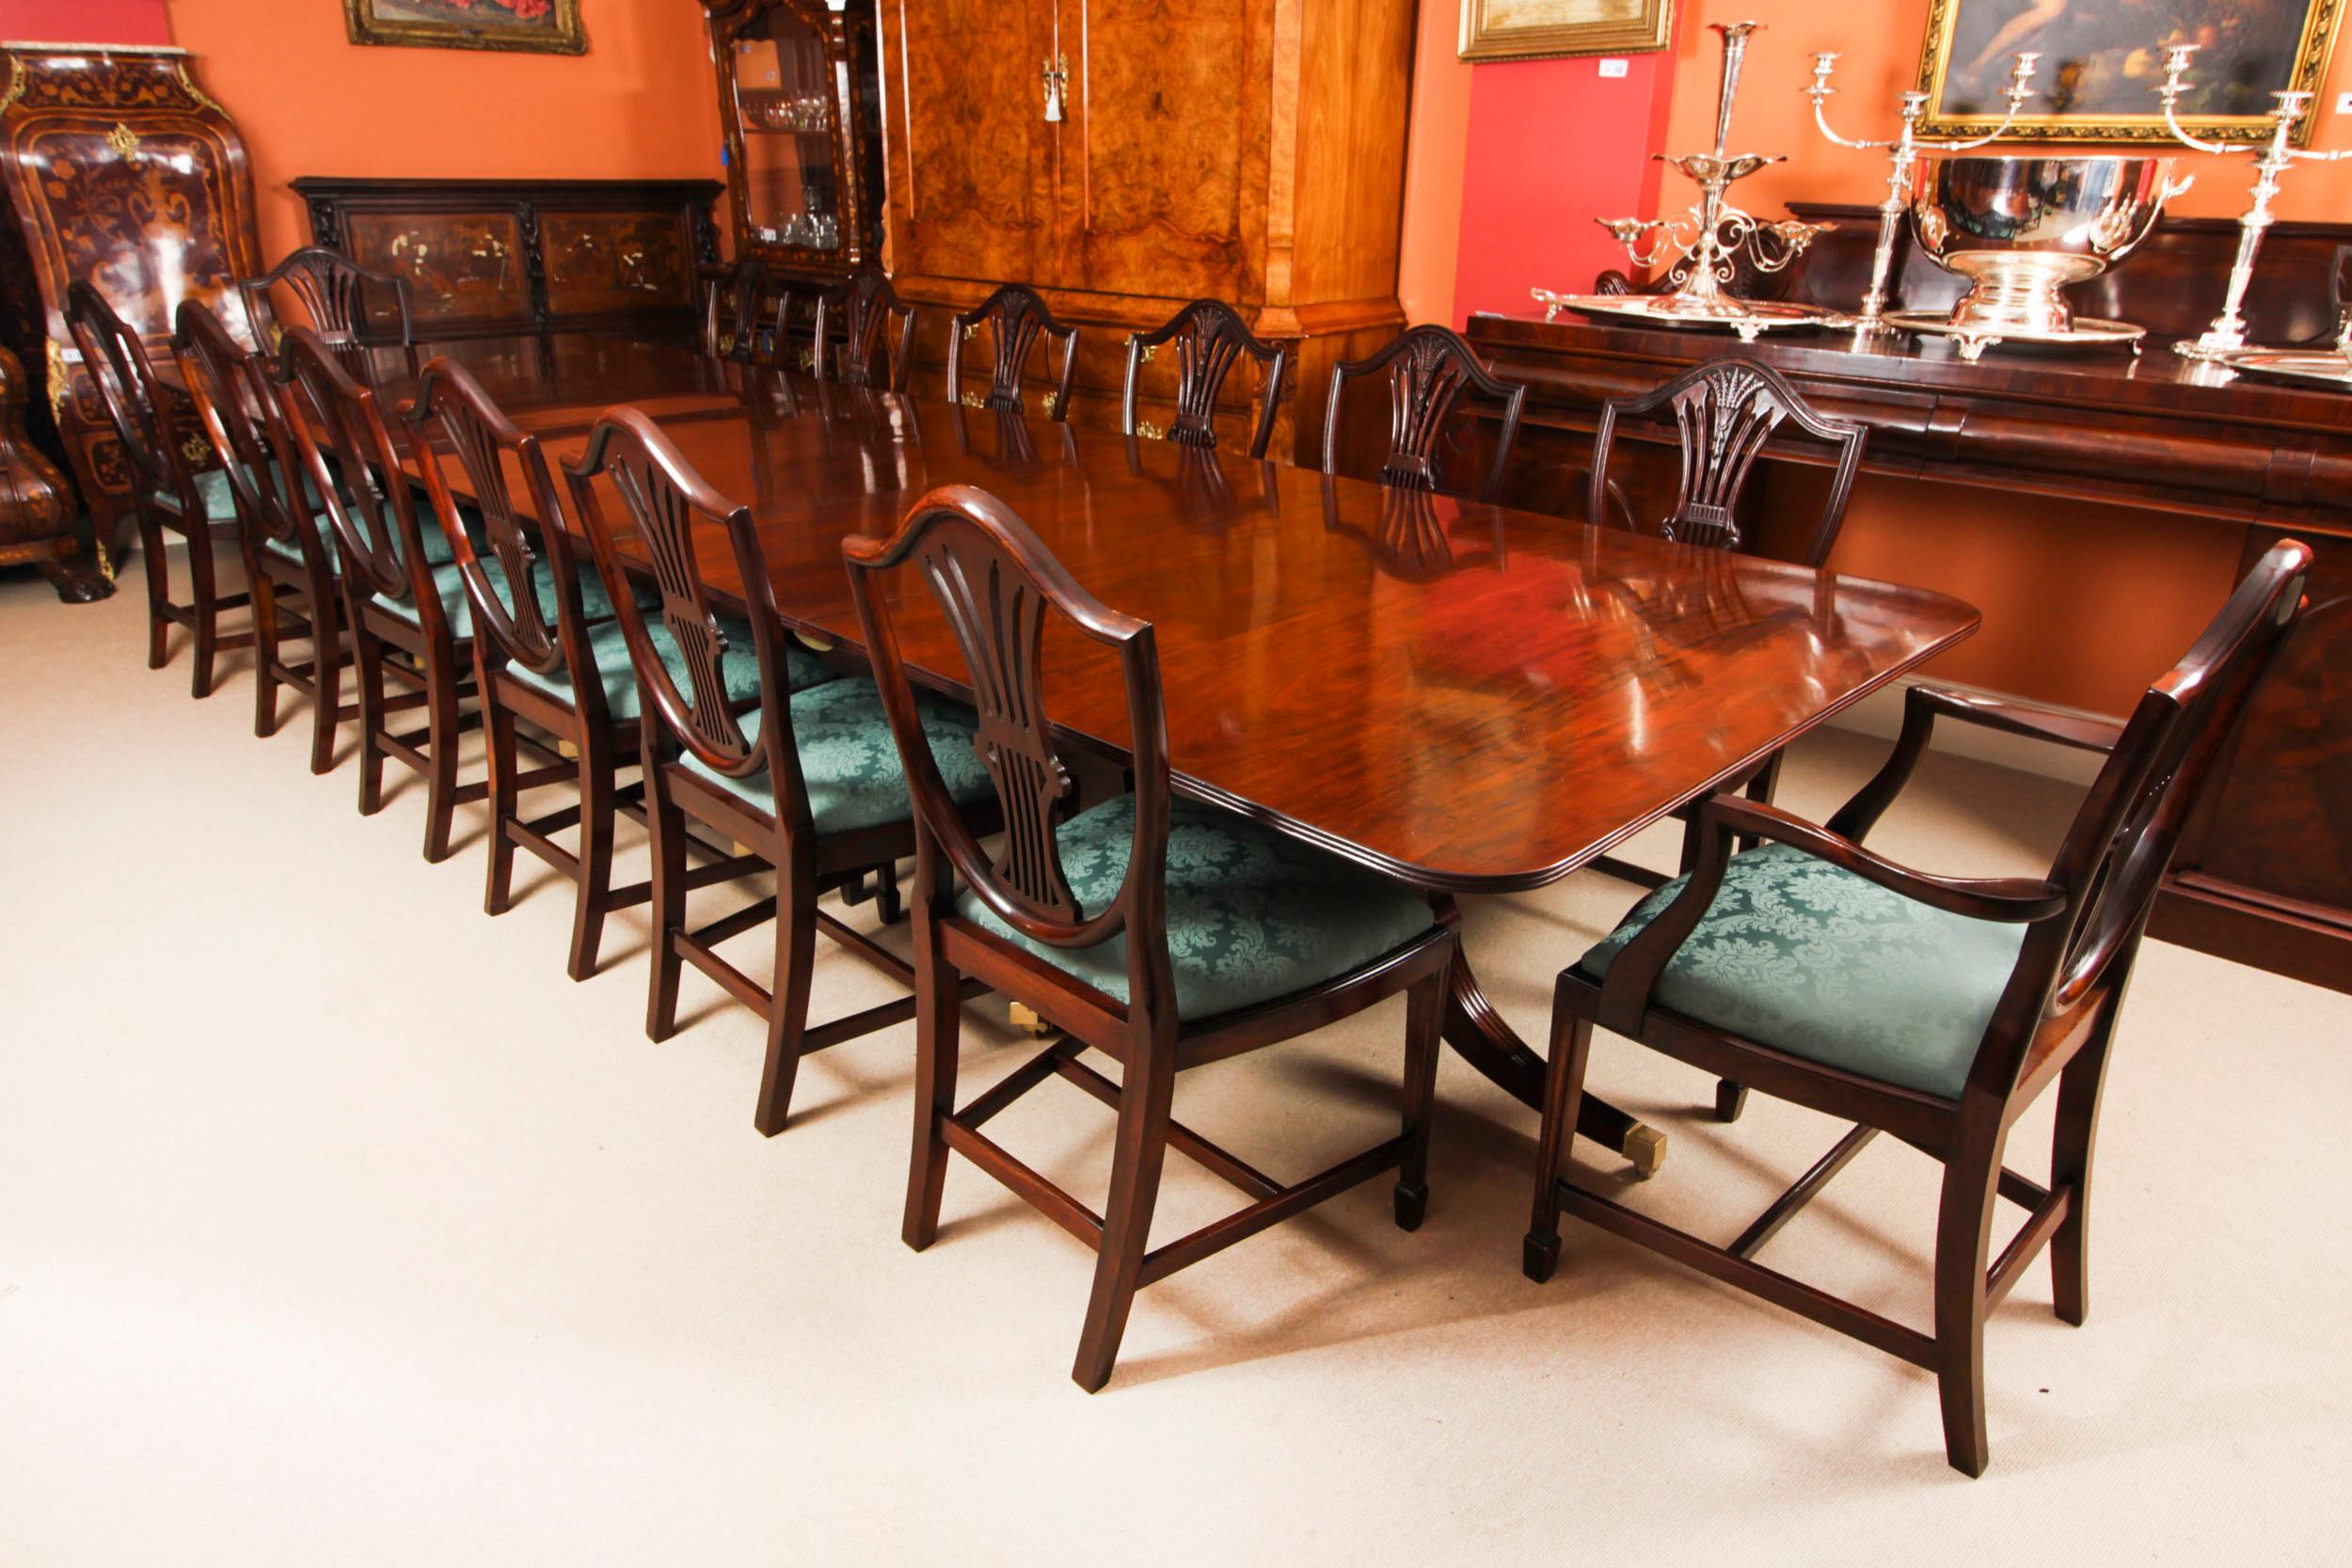 Il s'agit d'une élégante table de salle à manger antique de style Regency Revival pouvant accueillir confortablement quatorze personnes et datant de la seconde moitié du XIXe siècle.

La table possède deux plateaux qui peuvent être ajoutés ou